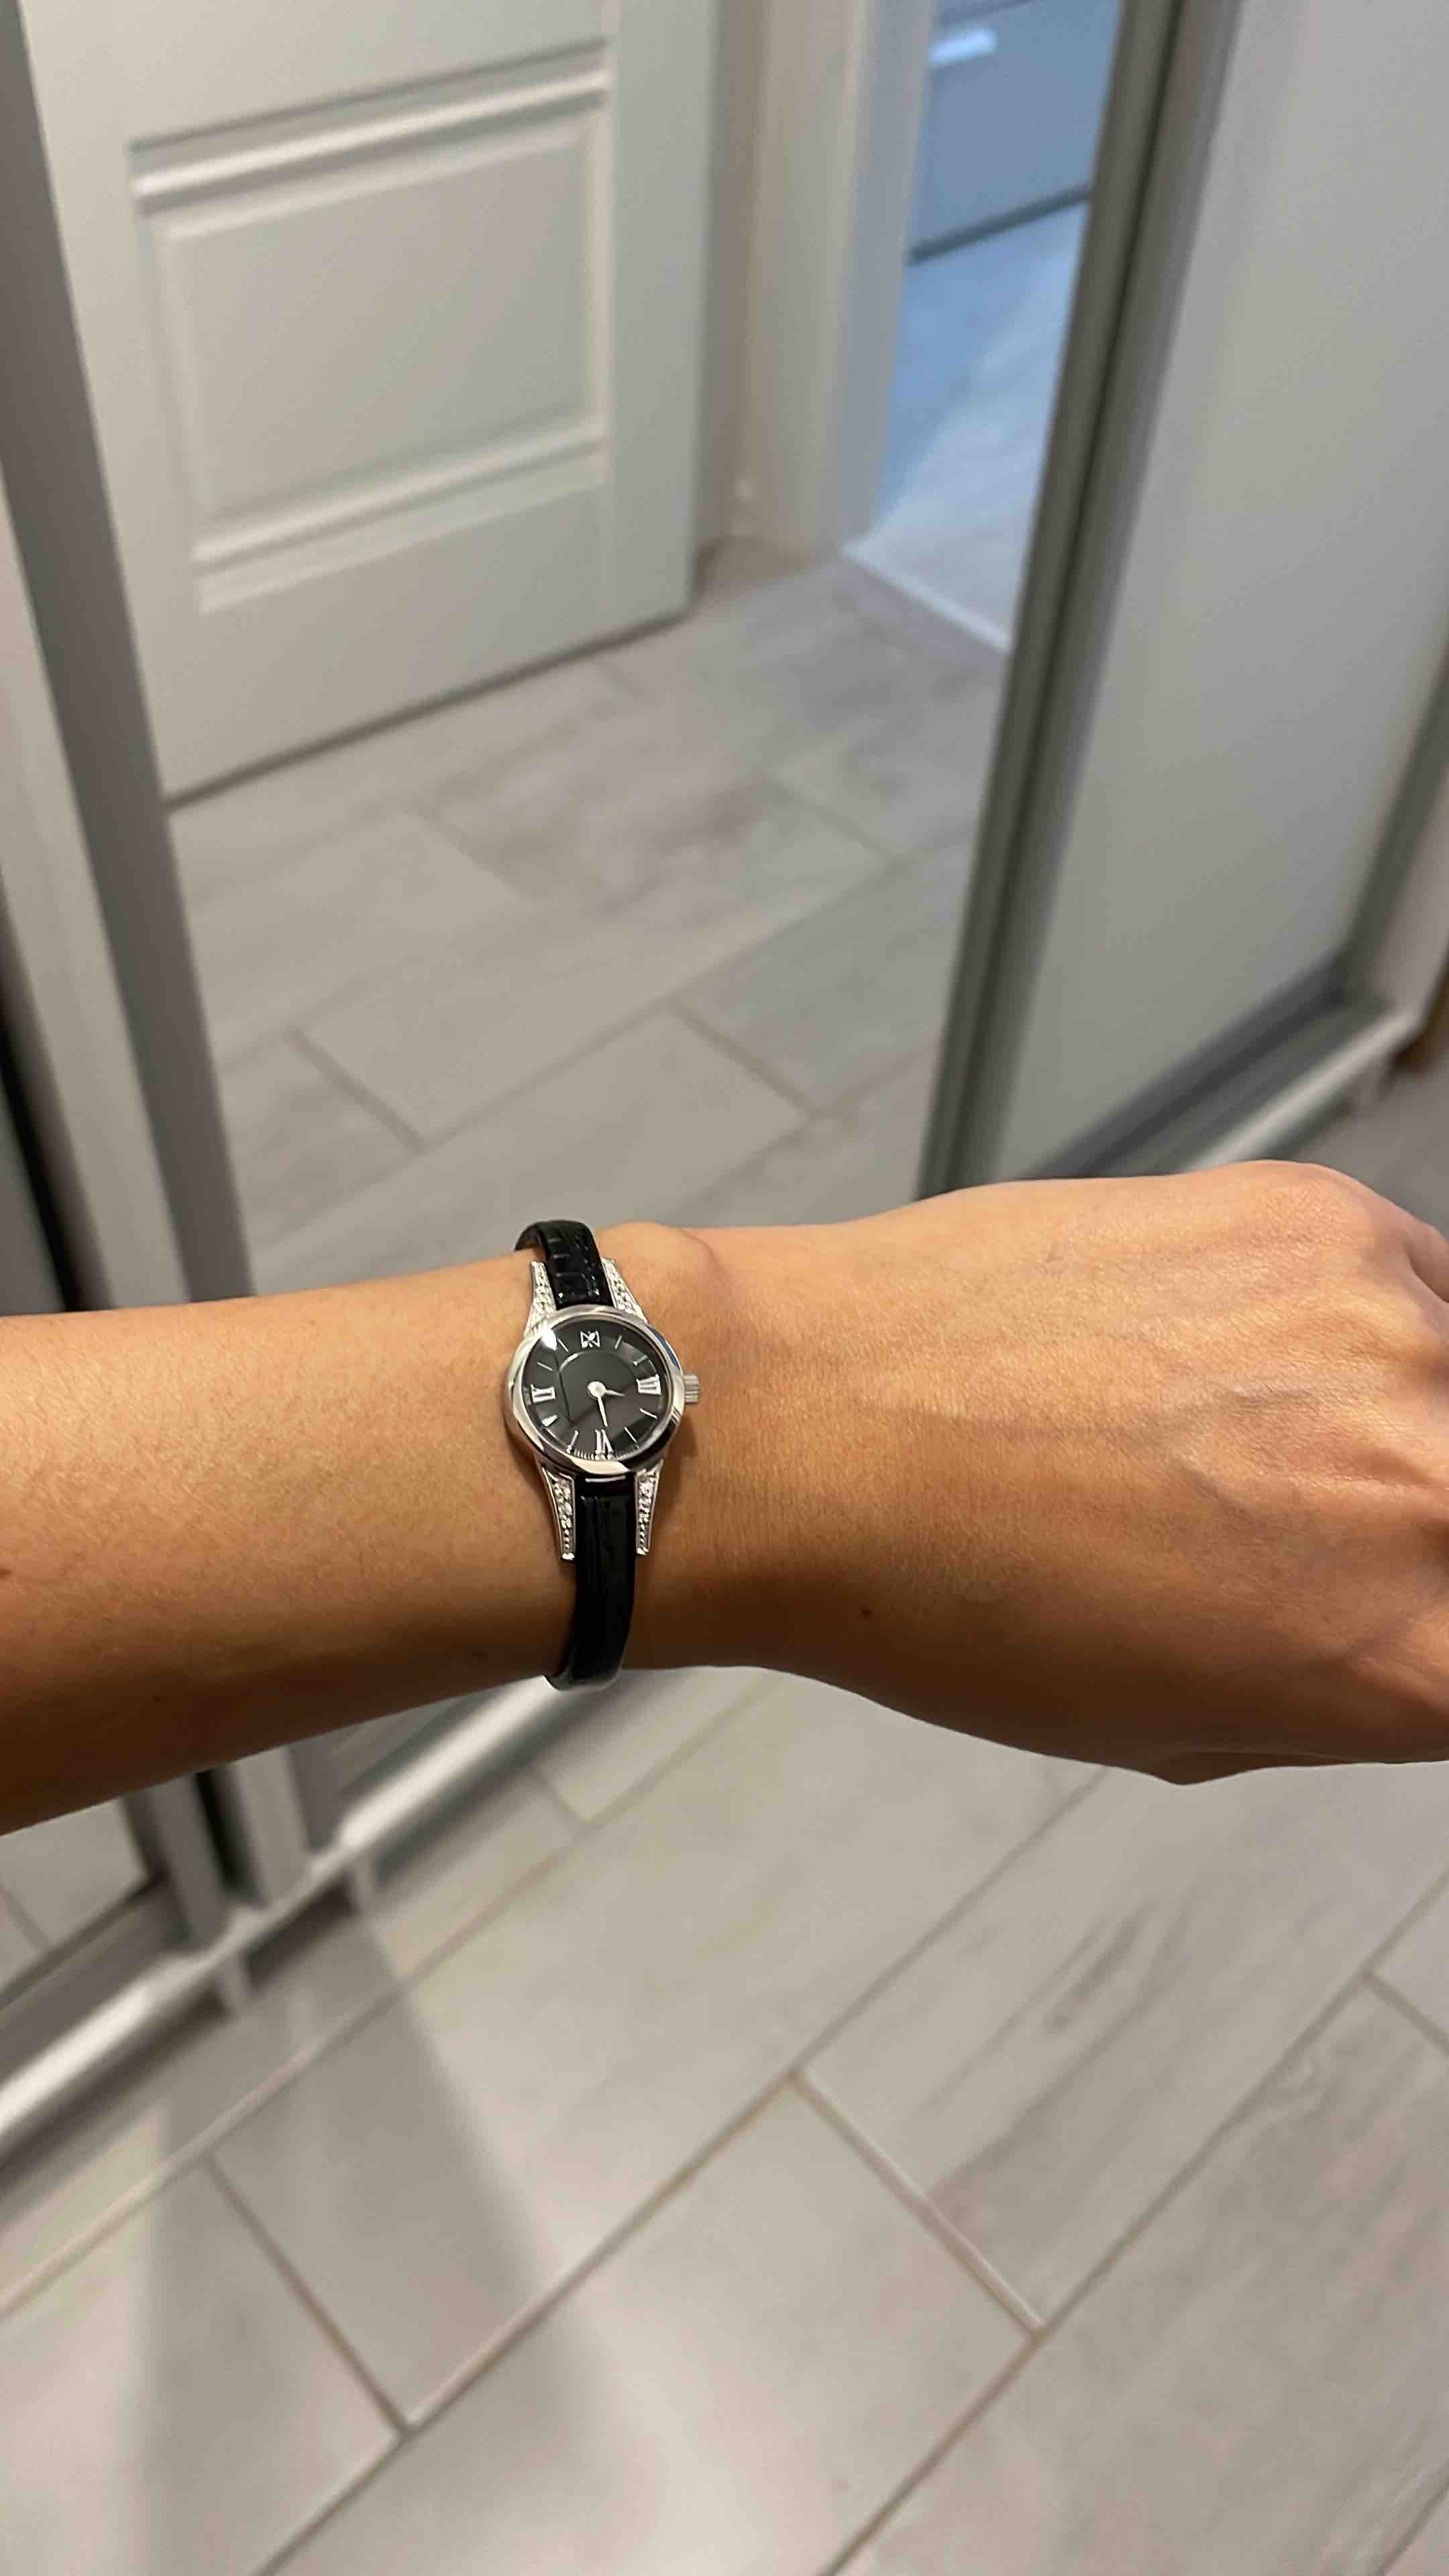 Женские наручные часы с браслетом — купить в internat-mednogorsk.ru, фото и цены в каталоге интернет-магазина